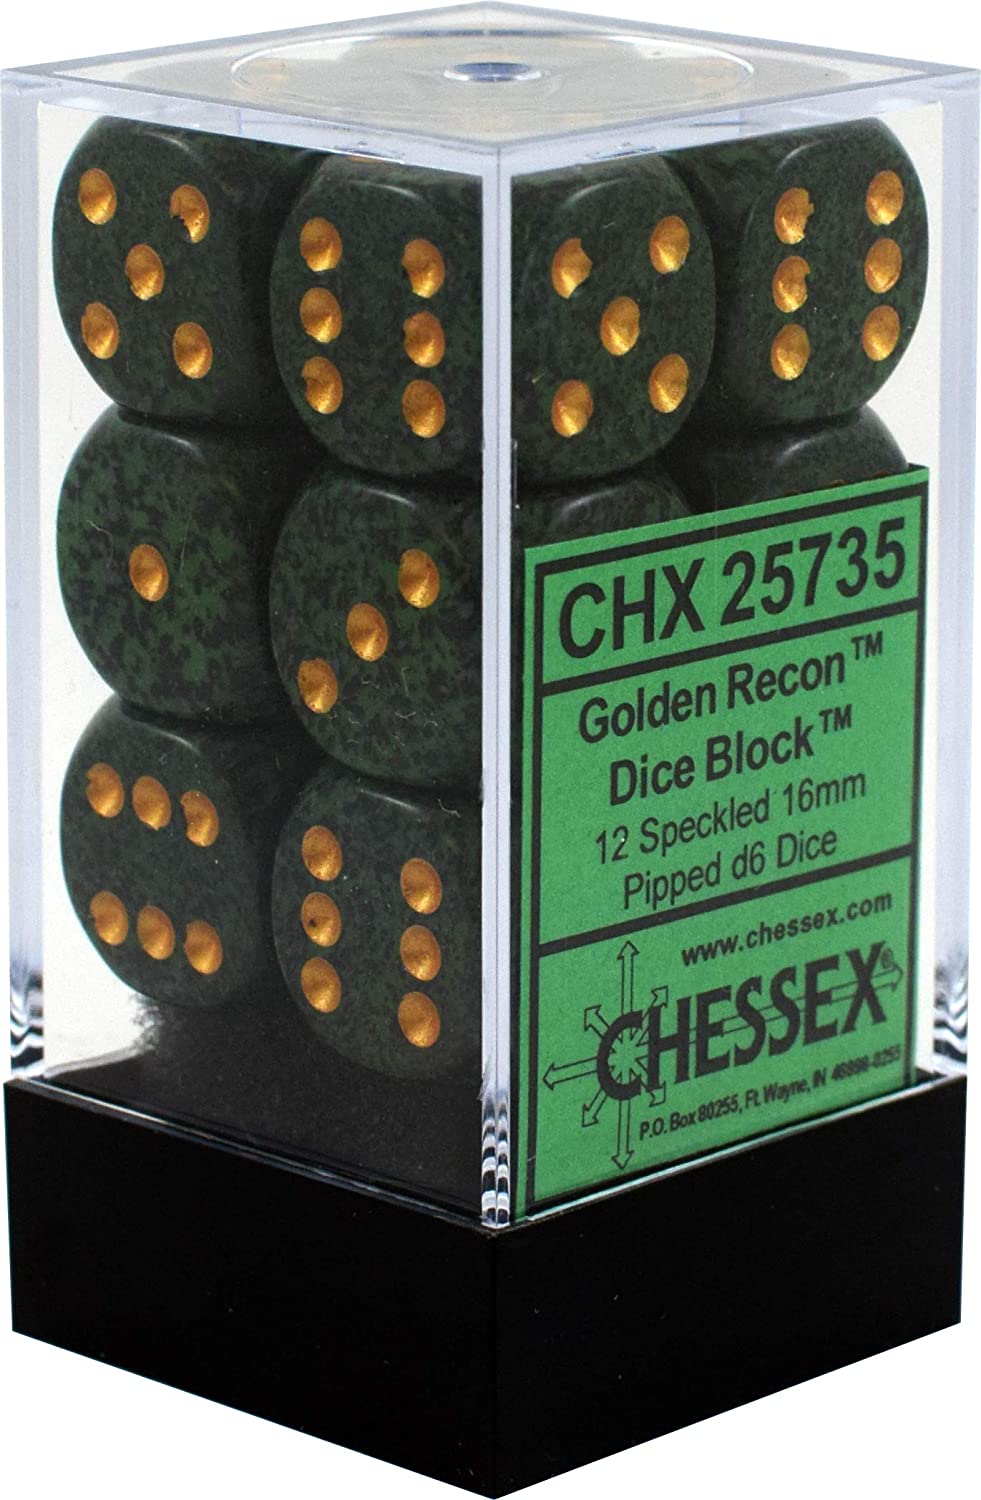 Chessex Golden Recon 16mm D6 Dice Block